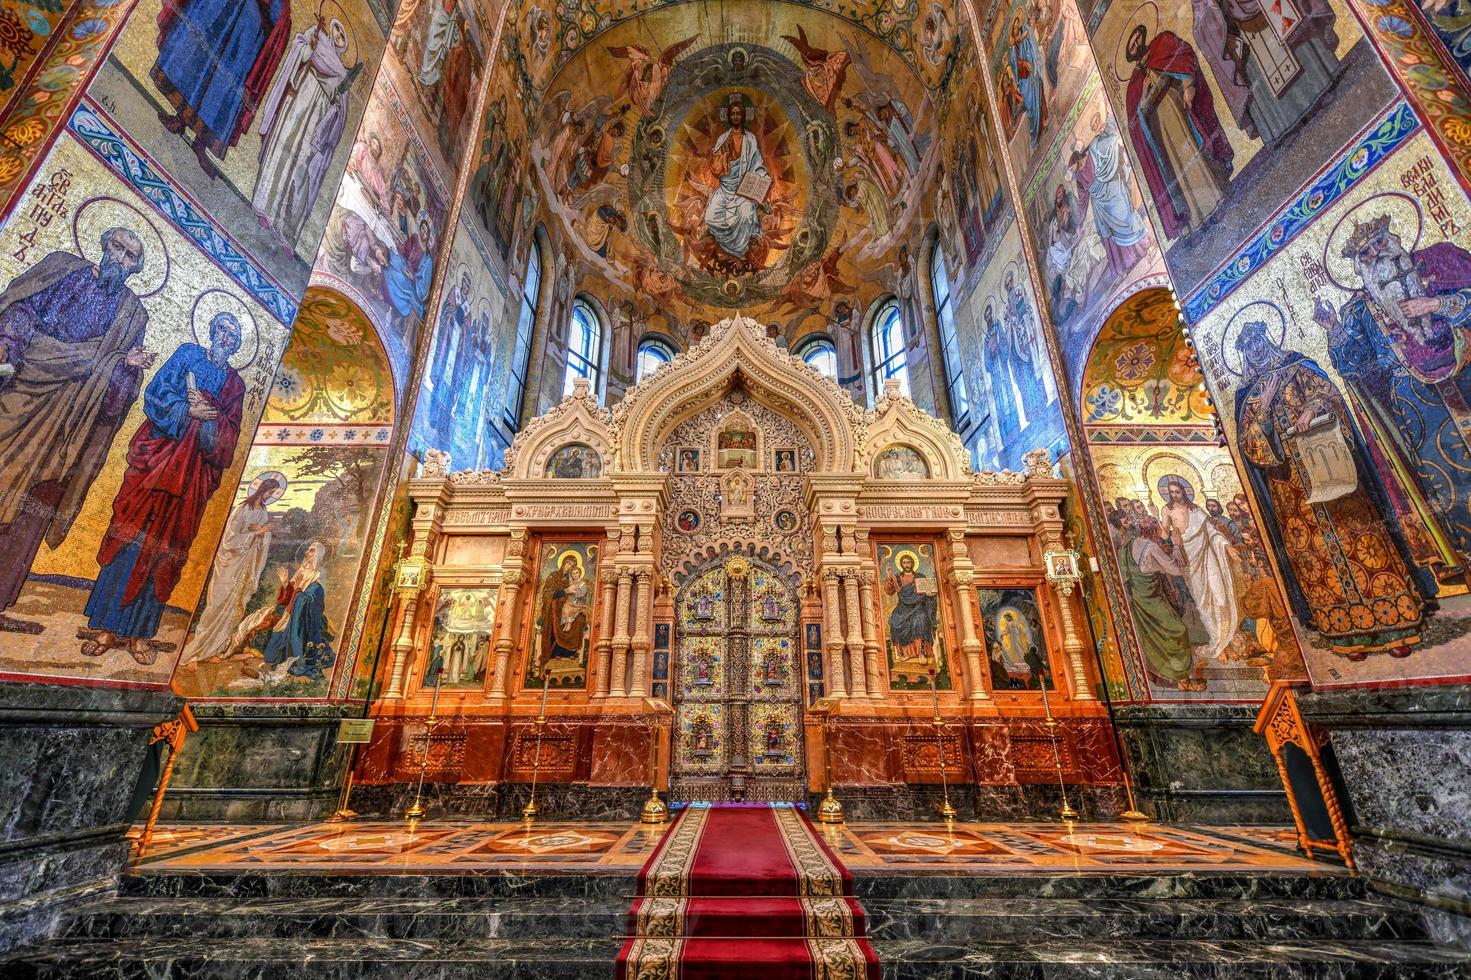 interno della chiesa del salvatore sul sangue versato in v. Pietroburgo, Russia foto